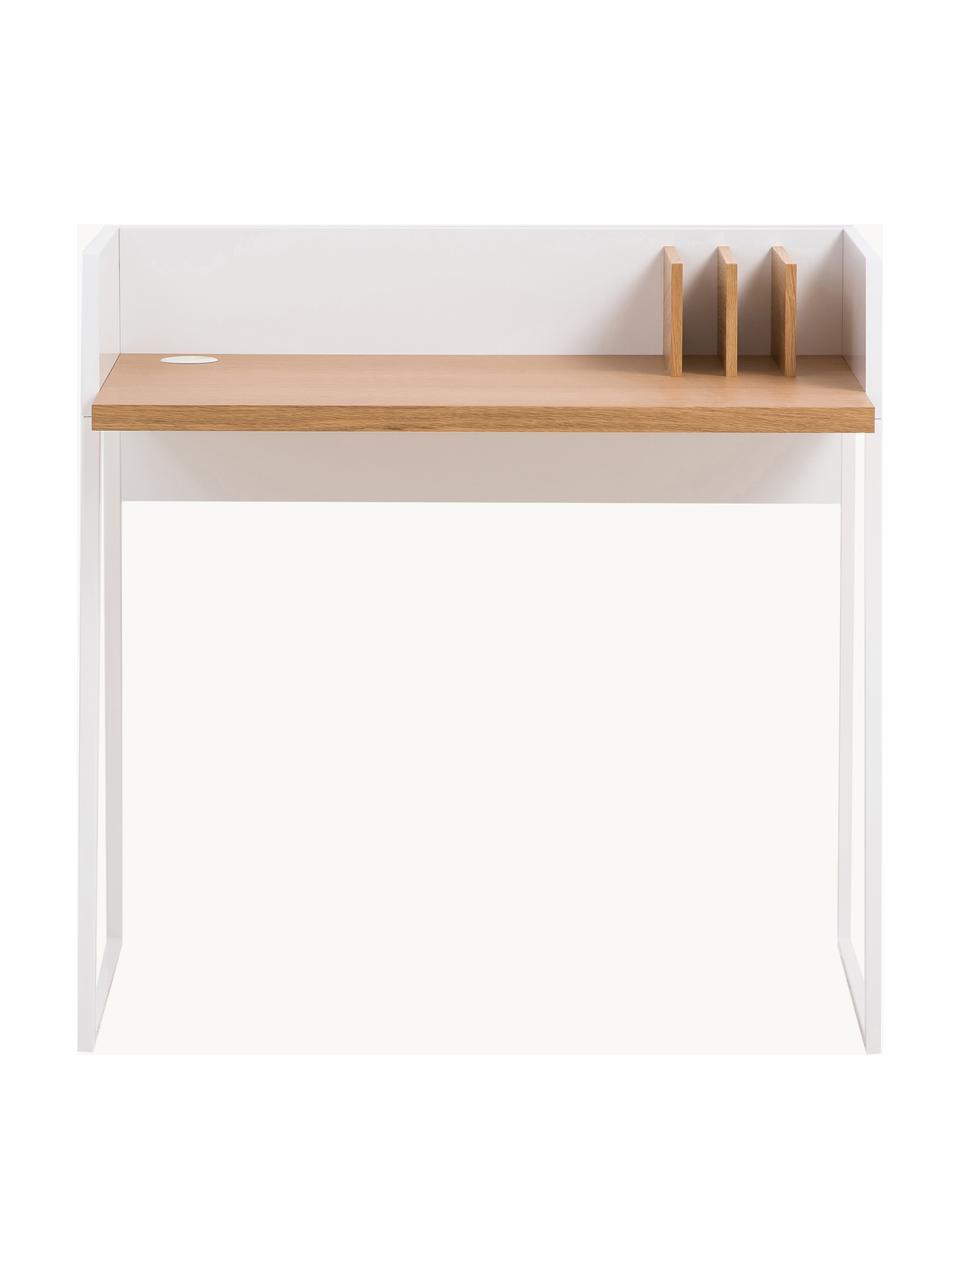 Kleiner Schreibtisch Camille mit Ablage, Beine: Metall, lackiert Dieses P, Holz, weiss lackiert, B 90 x T 60 cm